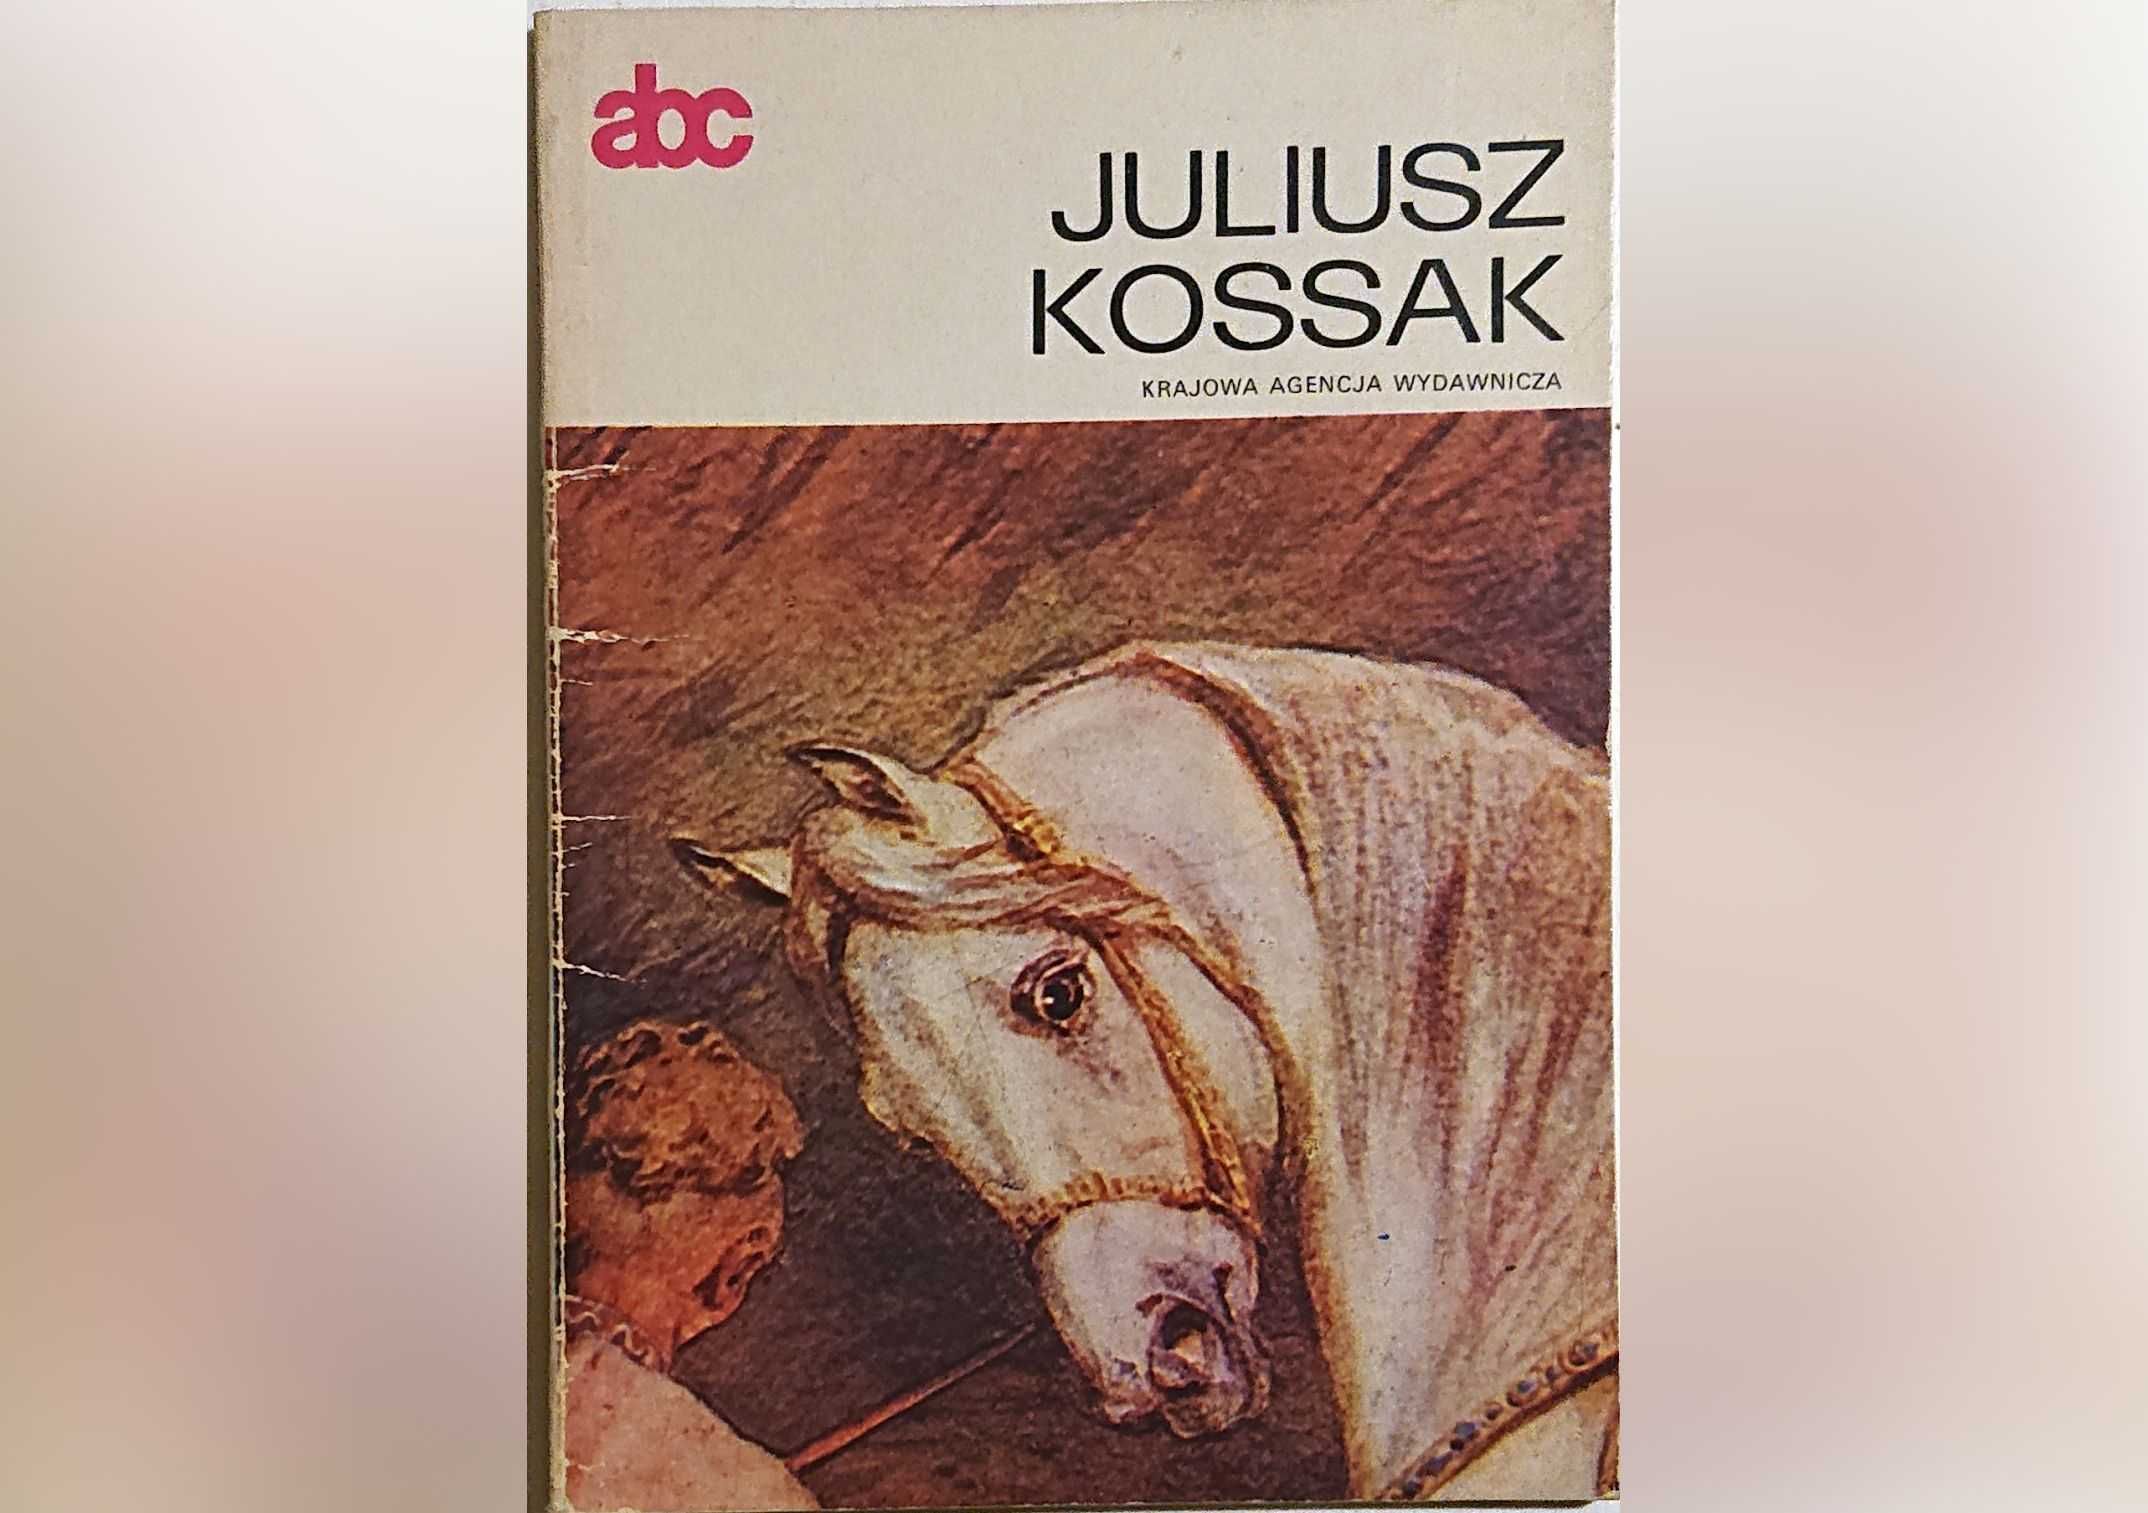 "Juliusz Kossak" - KAW seria "abc" - lata 80-te